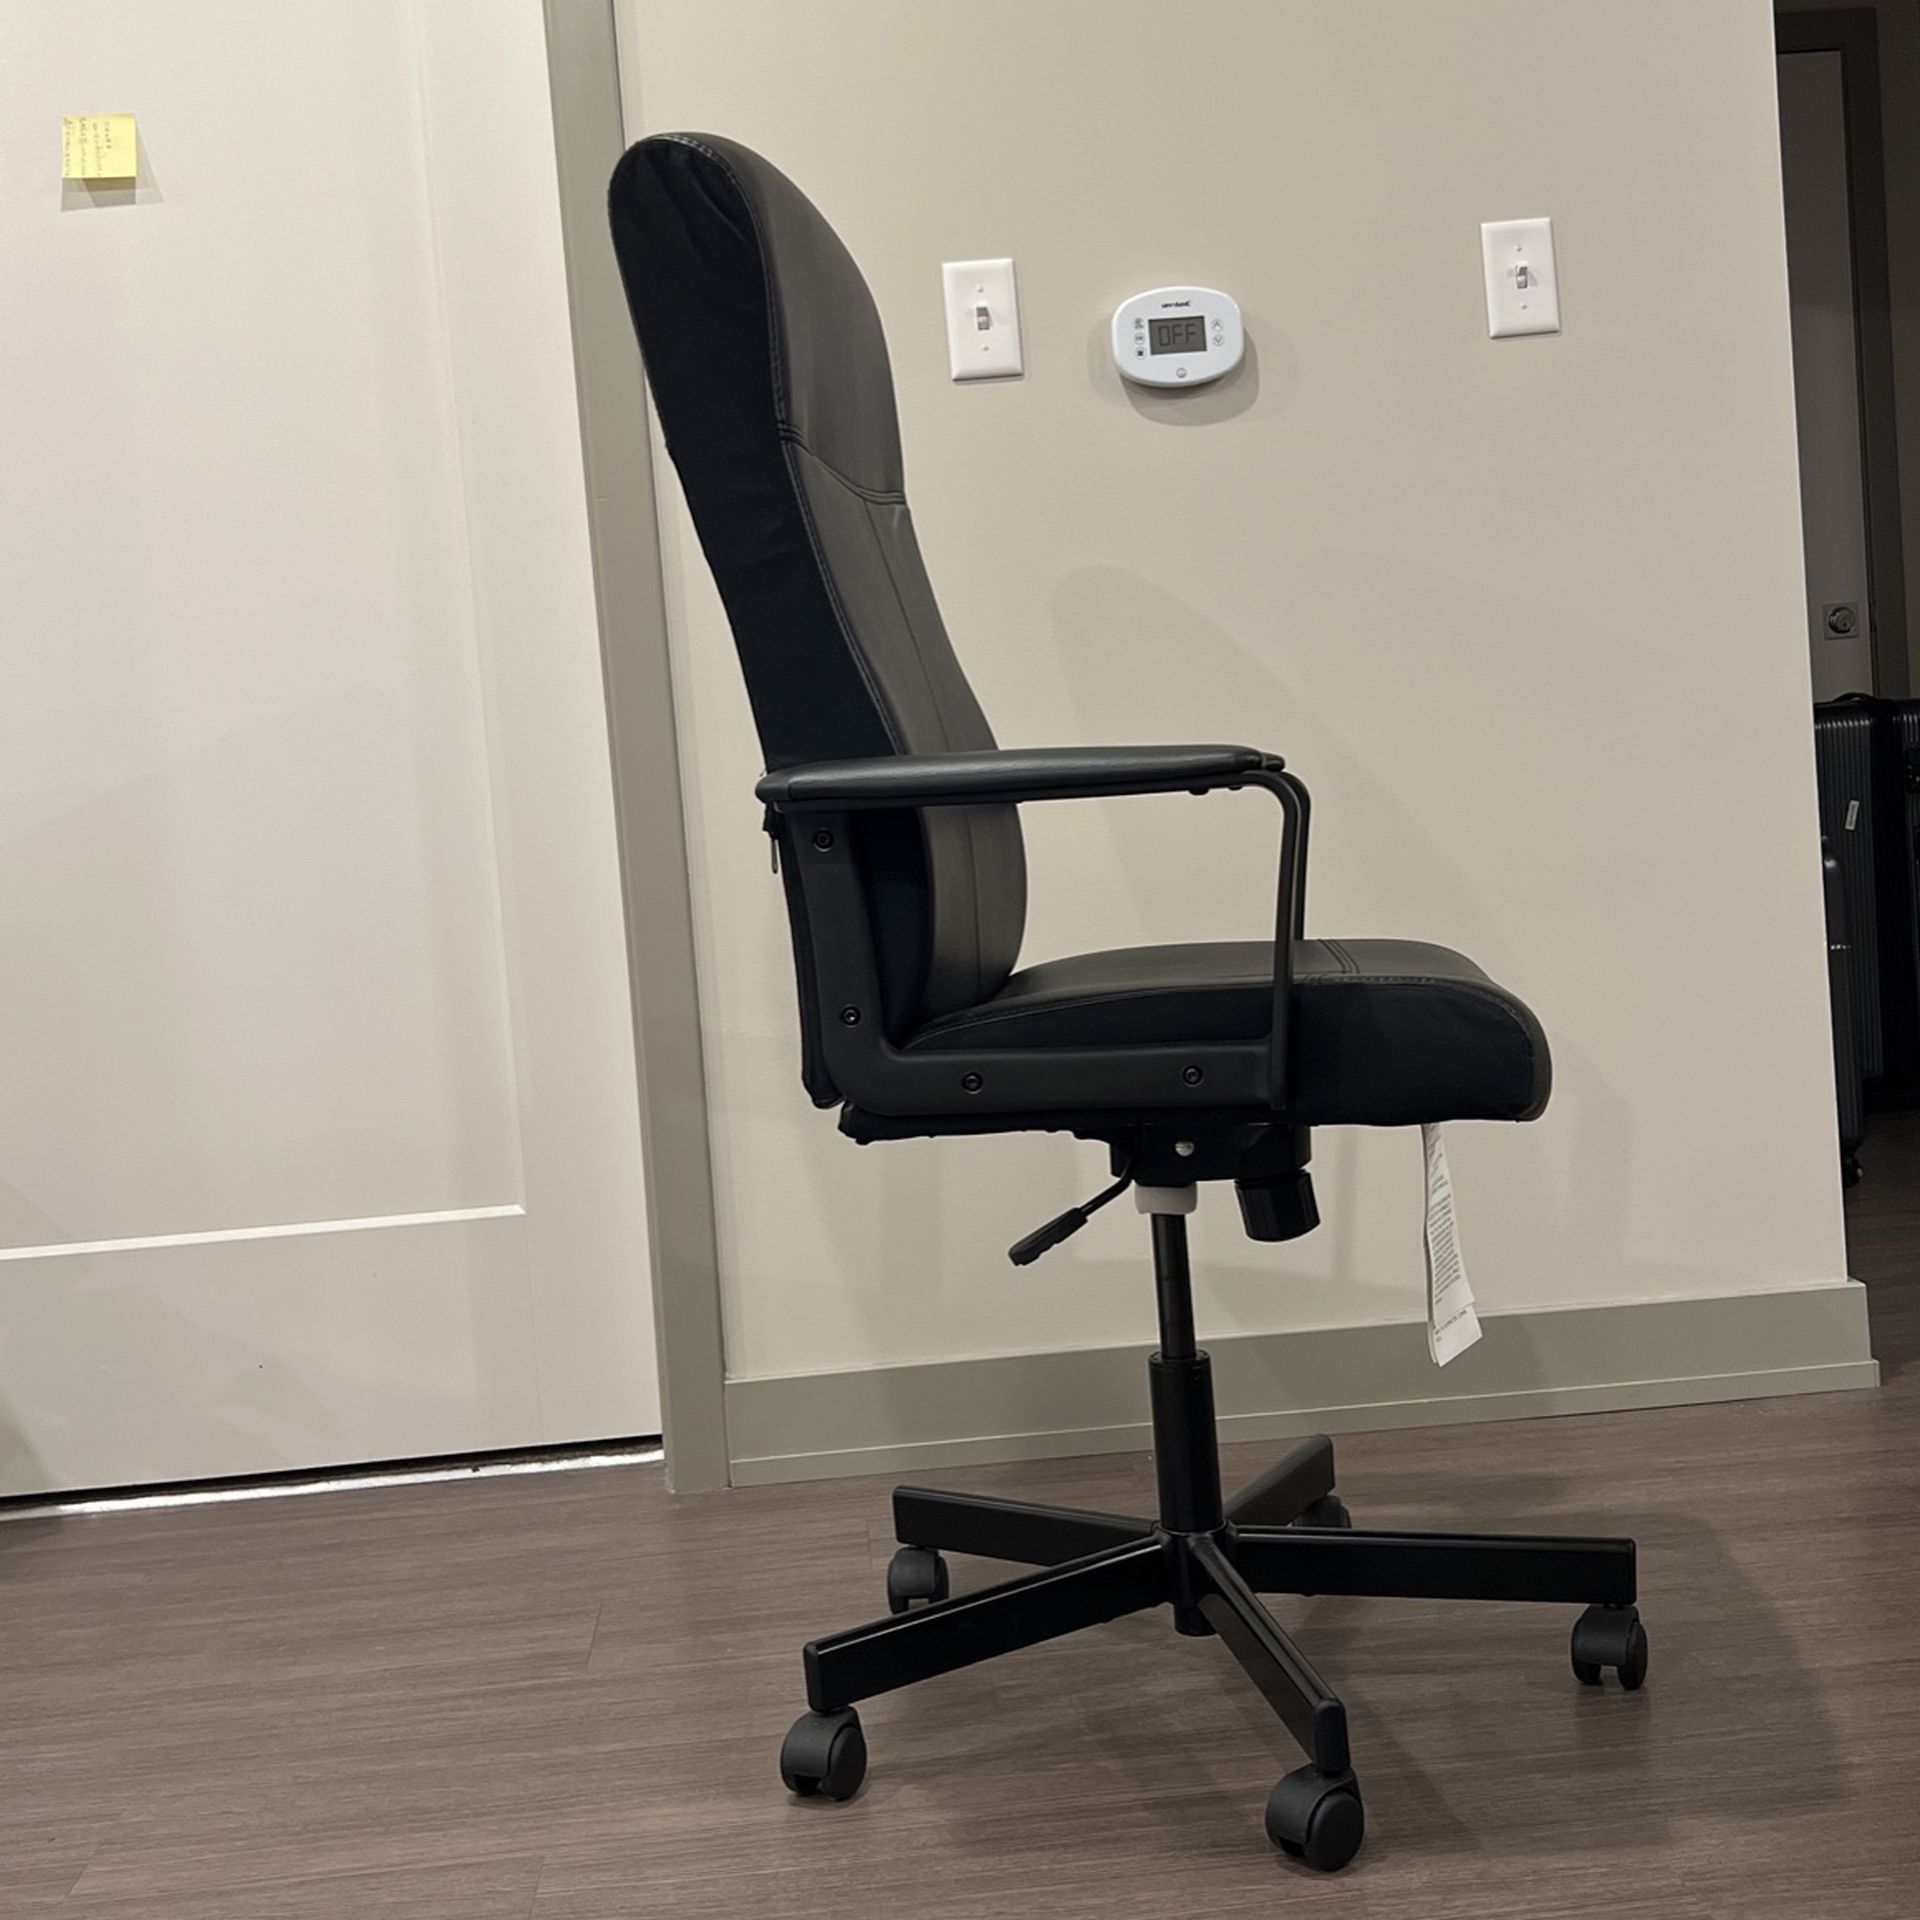 IKEA Study Chair